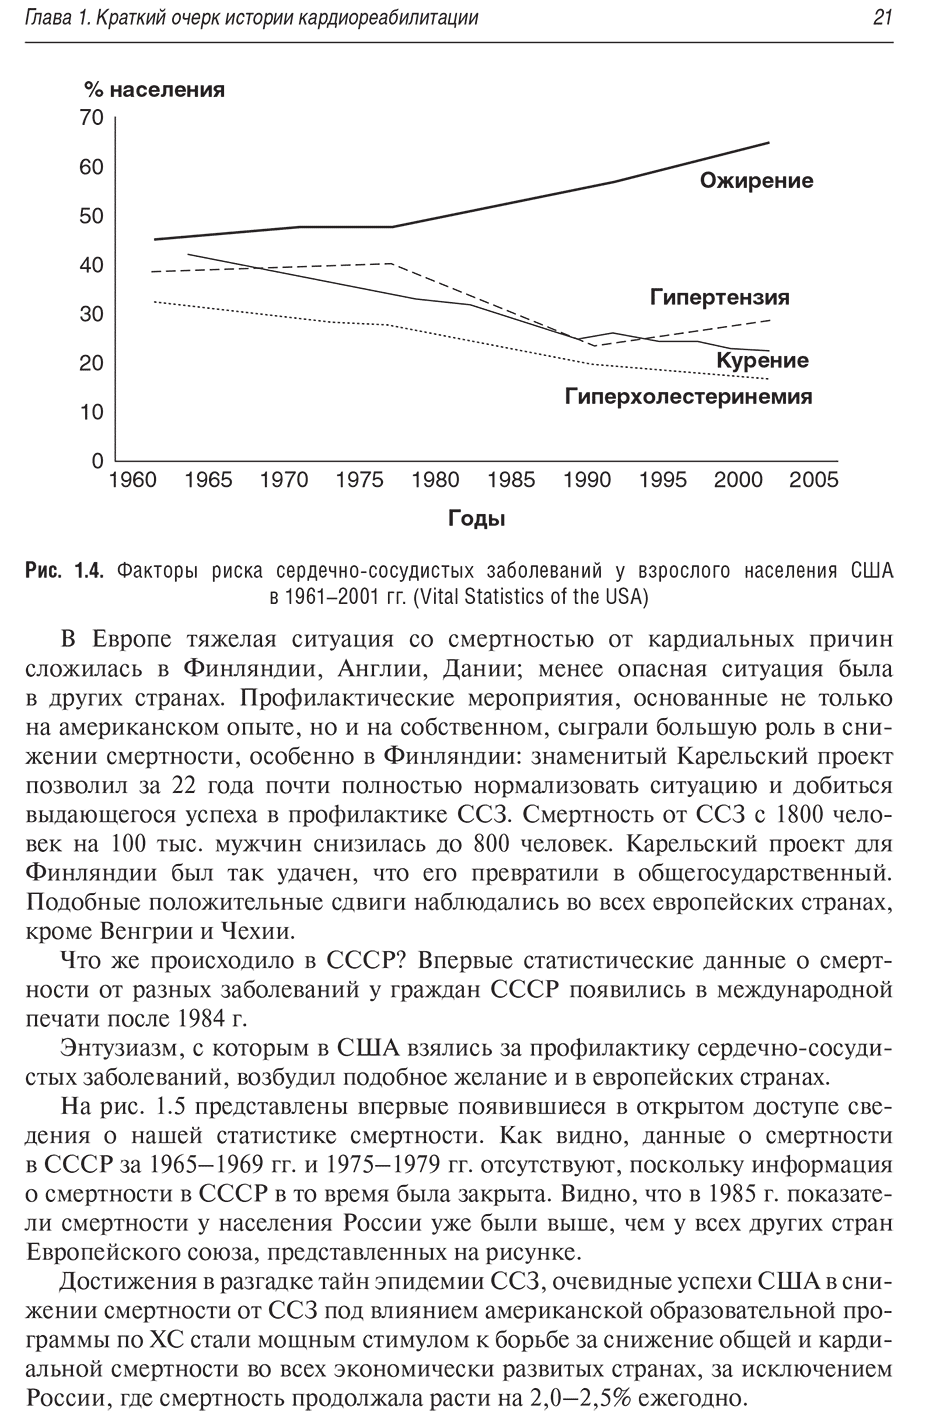 Рис. 1.4. Факторы риска сердечно-сосудистых заболеваний у взрослого населения США в 1961-2001 гг. (Vital Statistics of the USA)